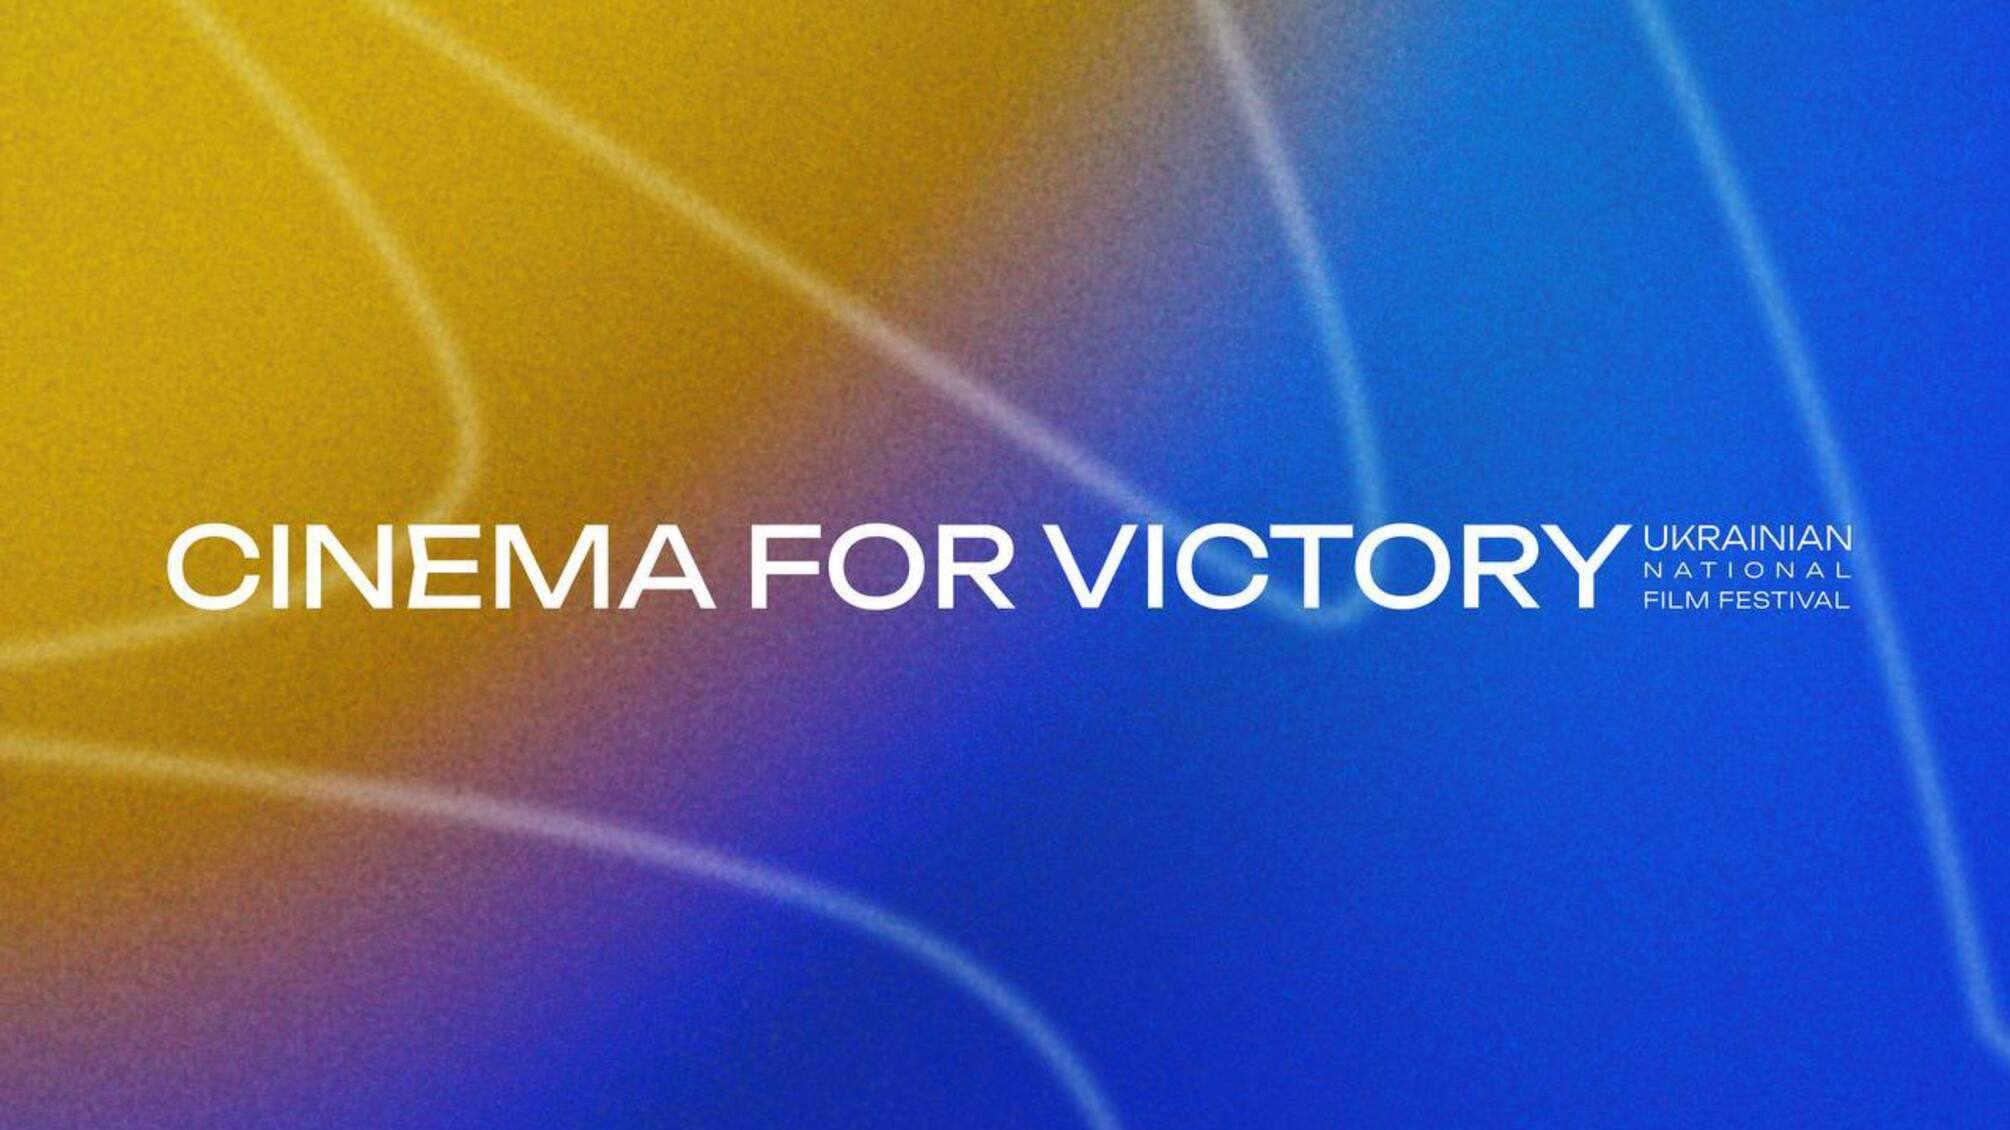 Шон Пенн, Лиев Шрайбер и Сергей Михальчук: кто вошел в жюри кинофестиваля 'Cinema for Victory'